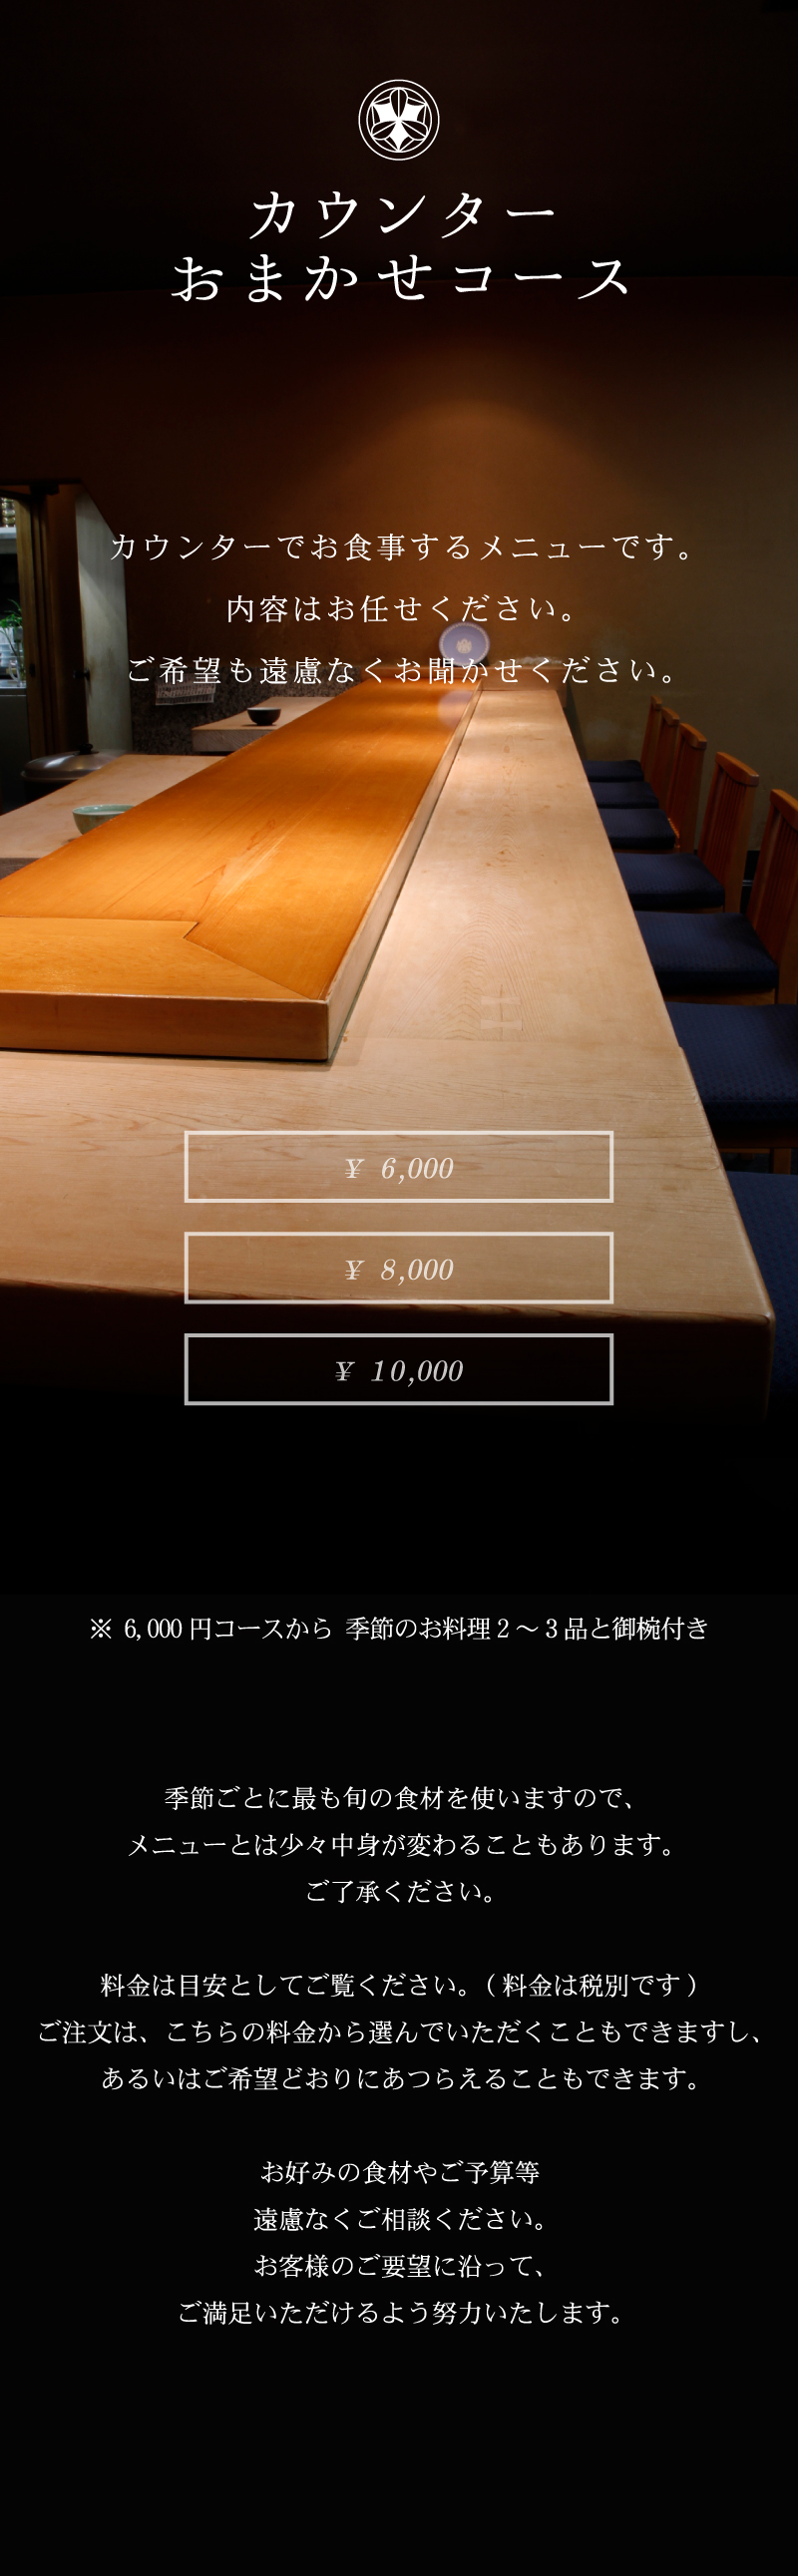 カウンターおまかせコース 「弁慶鮨」長年培った匠の技を目の前に、和の心と趣向を凝らした季節折々の料理をご堪能下さい。お客様のご希望どおりにあつらえることもできます。 カウンターでお食事するメニューです。内容はお任せください。ご希望も遠慮なくお聞かせ下さい。 ¥6,000 ¥8,000 ¥10,000 ※6,000円コースから季節のお料理2~3品と御椀付き 季節ごとに最も旬の食材を使いますので、メニューとは少々中身が変わることもあります。ご了承ください。料金は目安としてご覧ください。(料金は税別です)注文は、こちらの料金から選んでいただくこともできますし、あるいはご希望どおりにあつらえることもできます。お好みの食材やご予算等遠慮なくご相談ください。お客様のご要望に沿って、ご満足いただけるよう努力いたします。